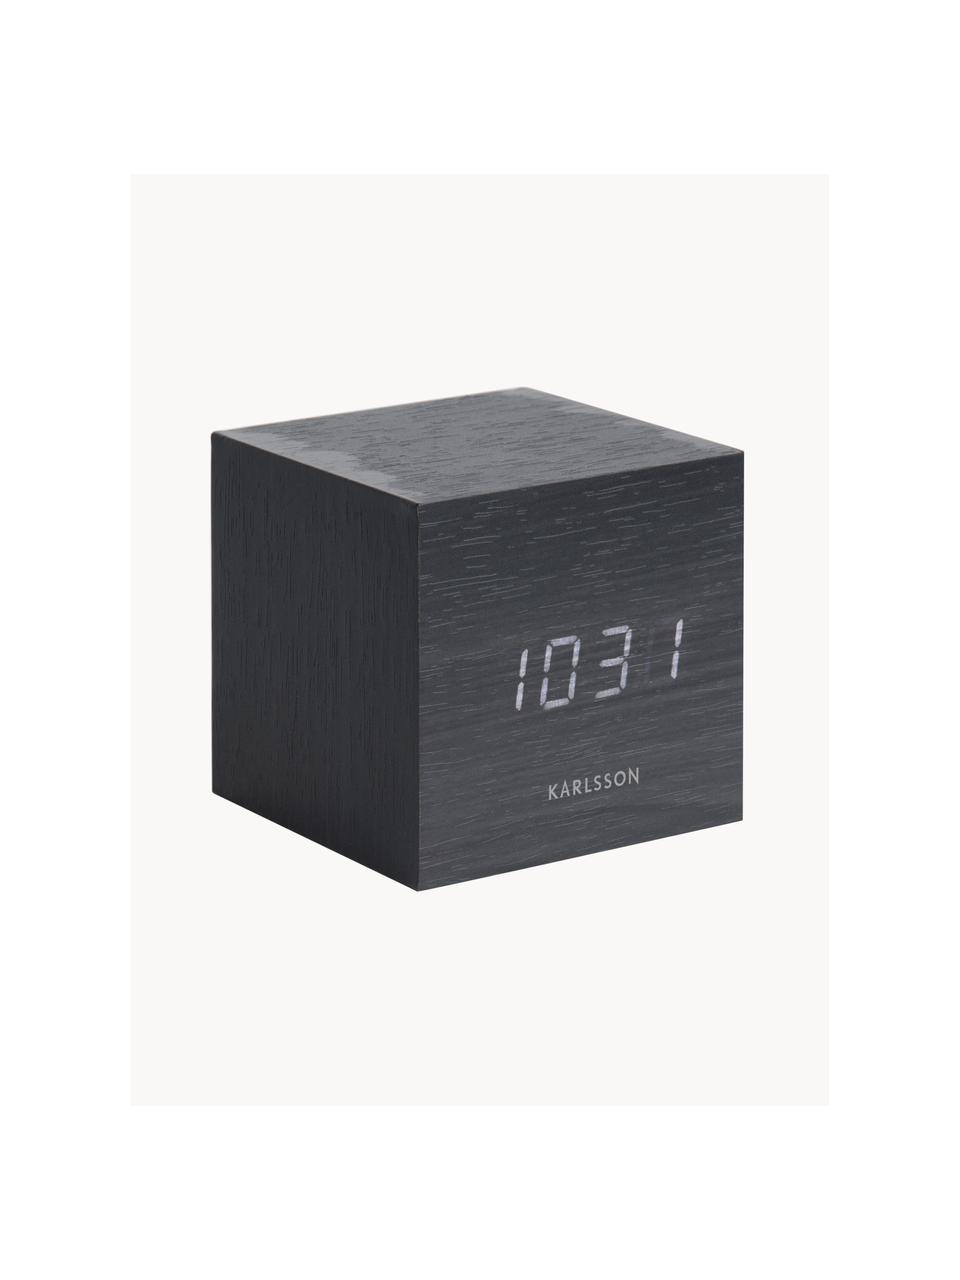 Despertador LED Cube, con conexión USB, Chapa de madera, Negro, An 8 x Al 8 cm